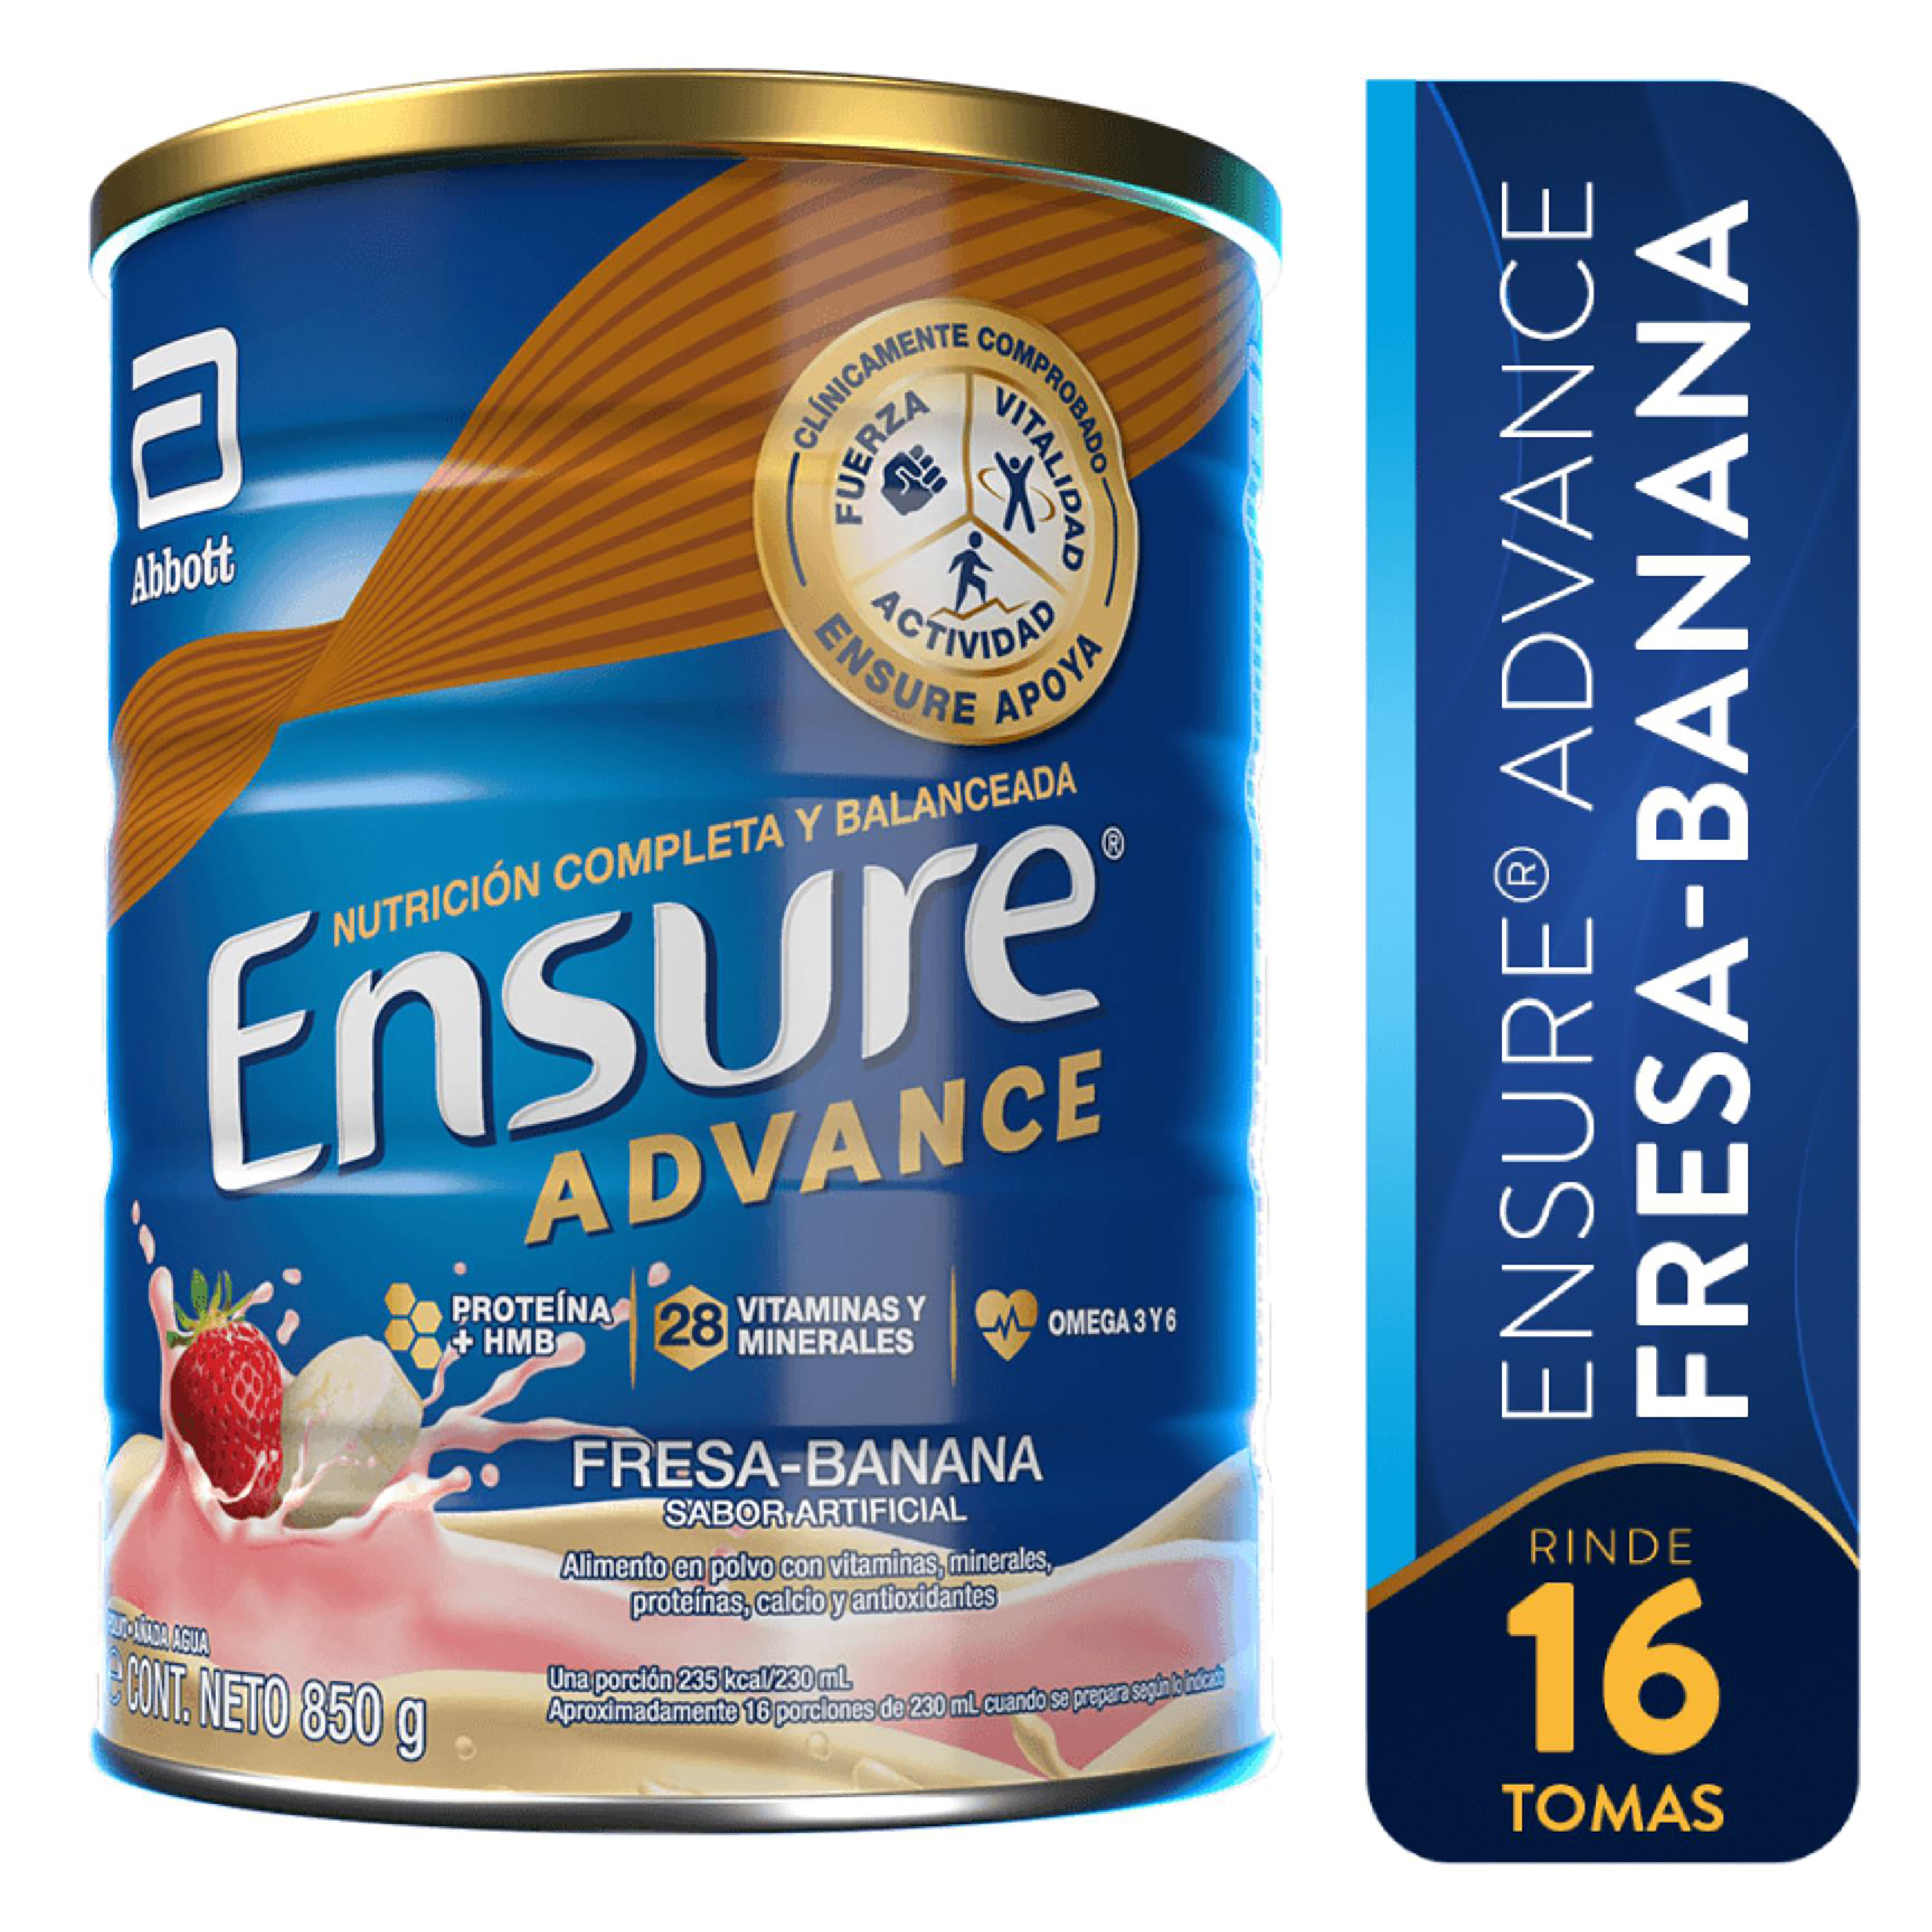 F-rmula-Nutricional-marca-Ensure-Advance-Fresa-Banana-850-g-1-52690